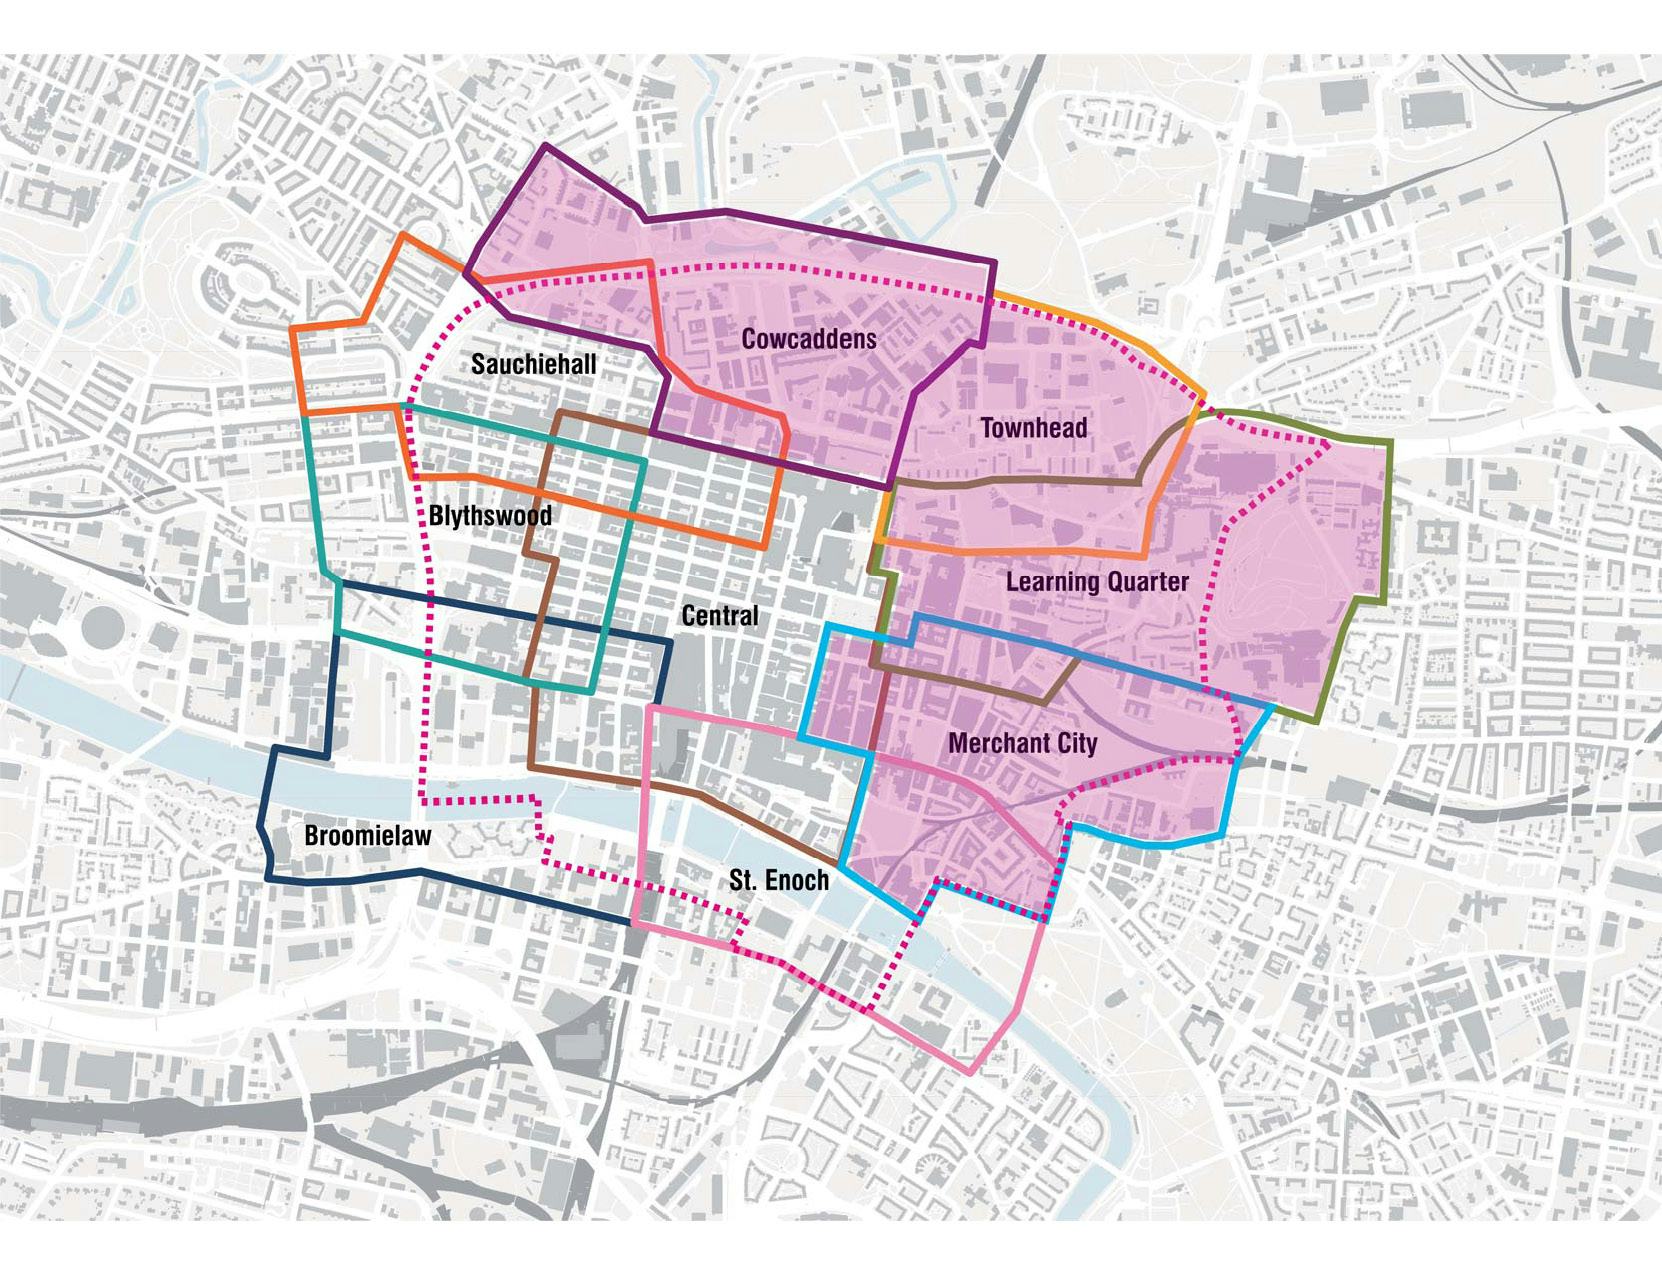 Kaart District Regeneration Frameworks in Glasgow door Studio for New Realities